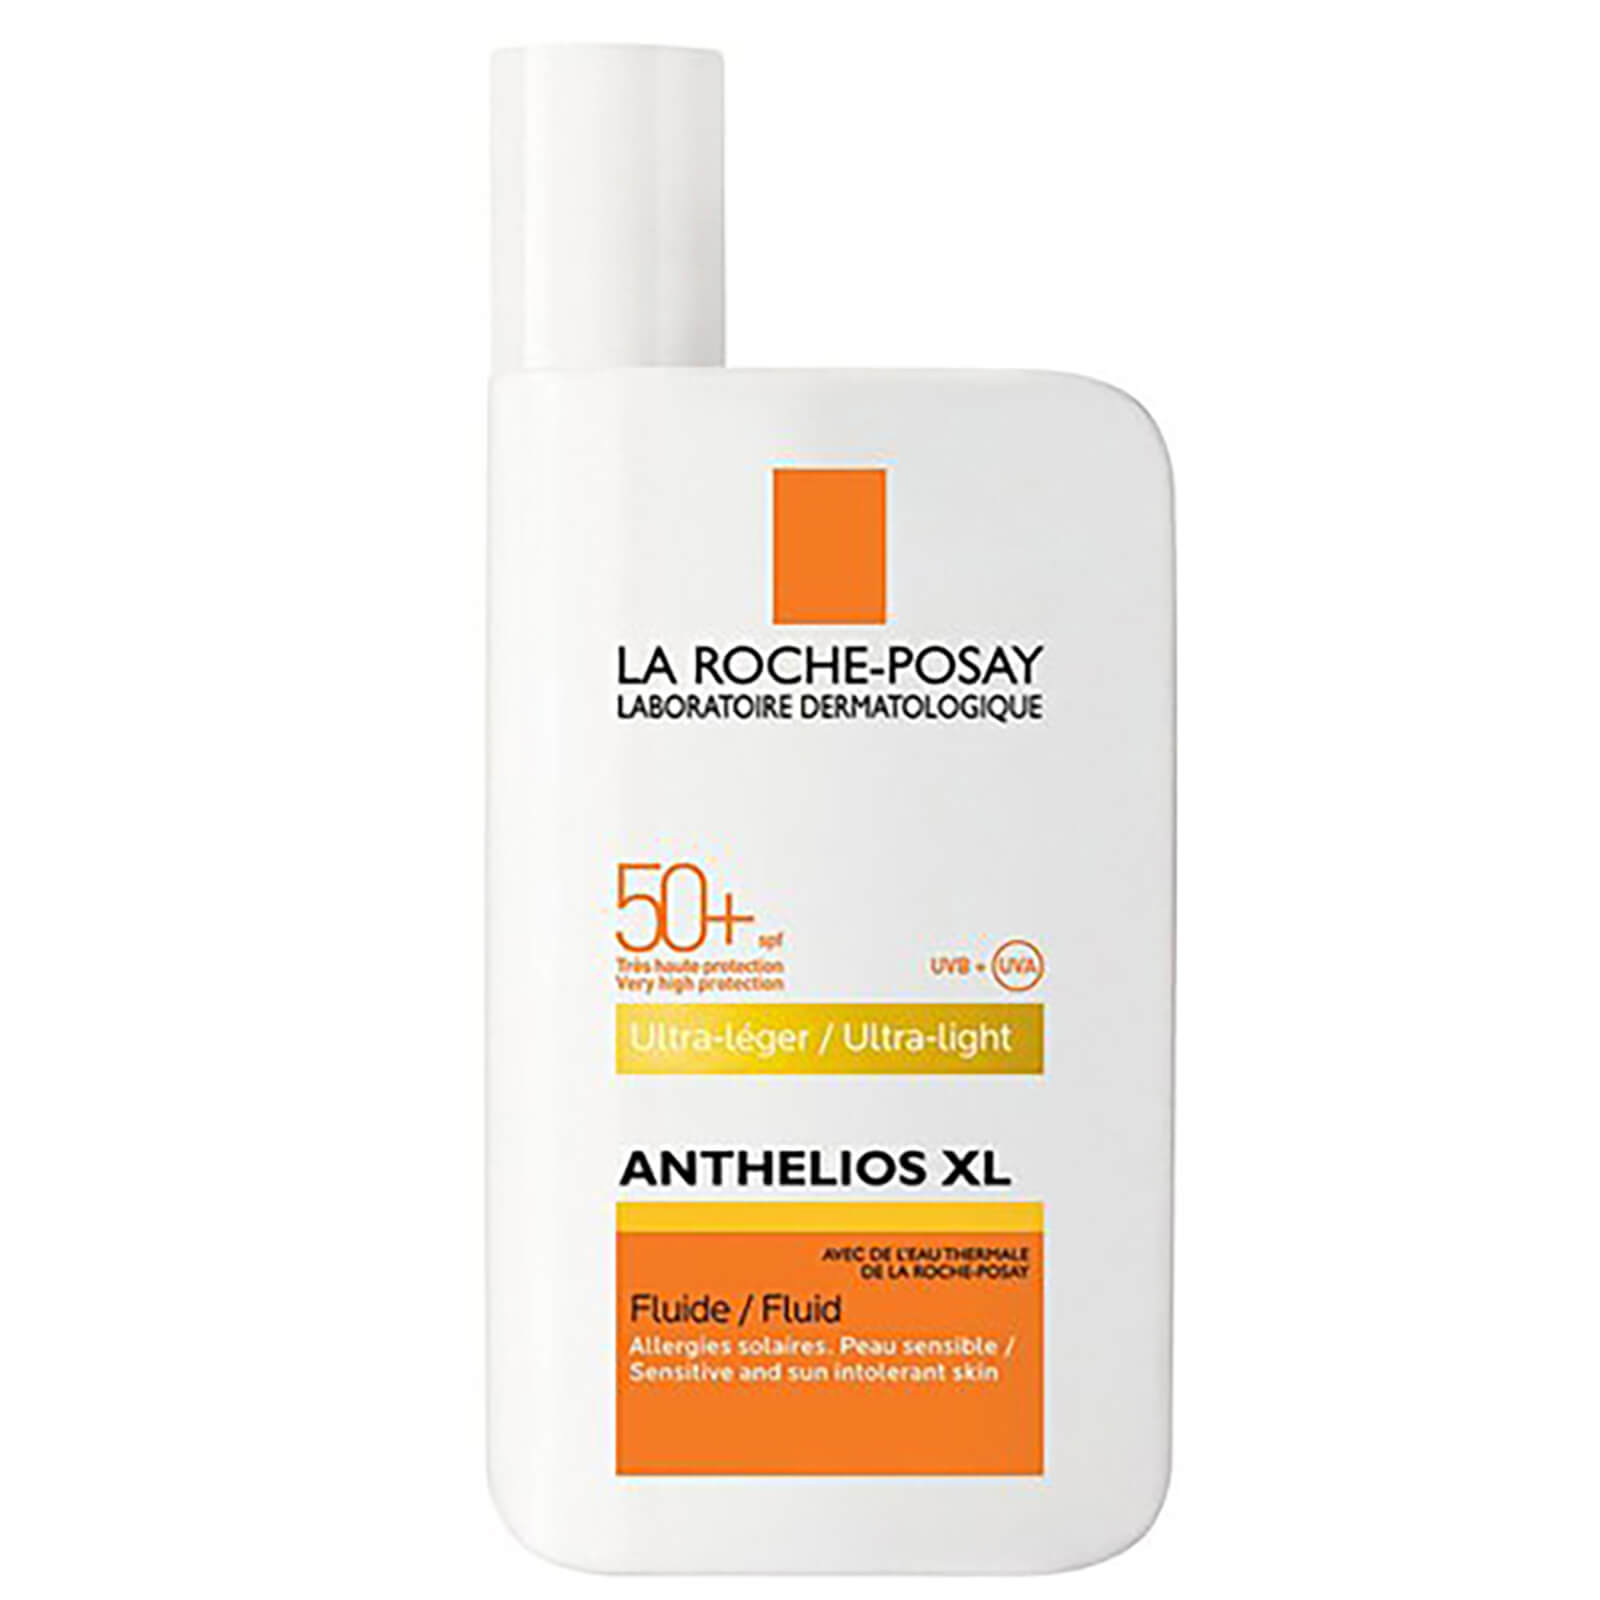 Ultra Light Fluid SPF 50+ Anthelios XL de La Roche-Posay, 50 ml